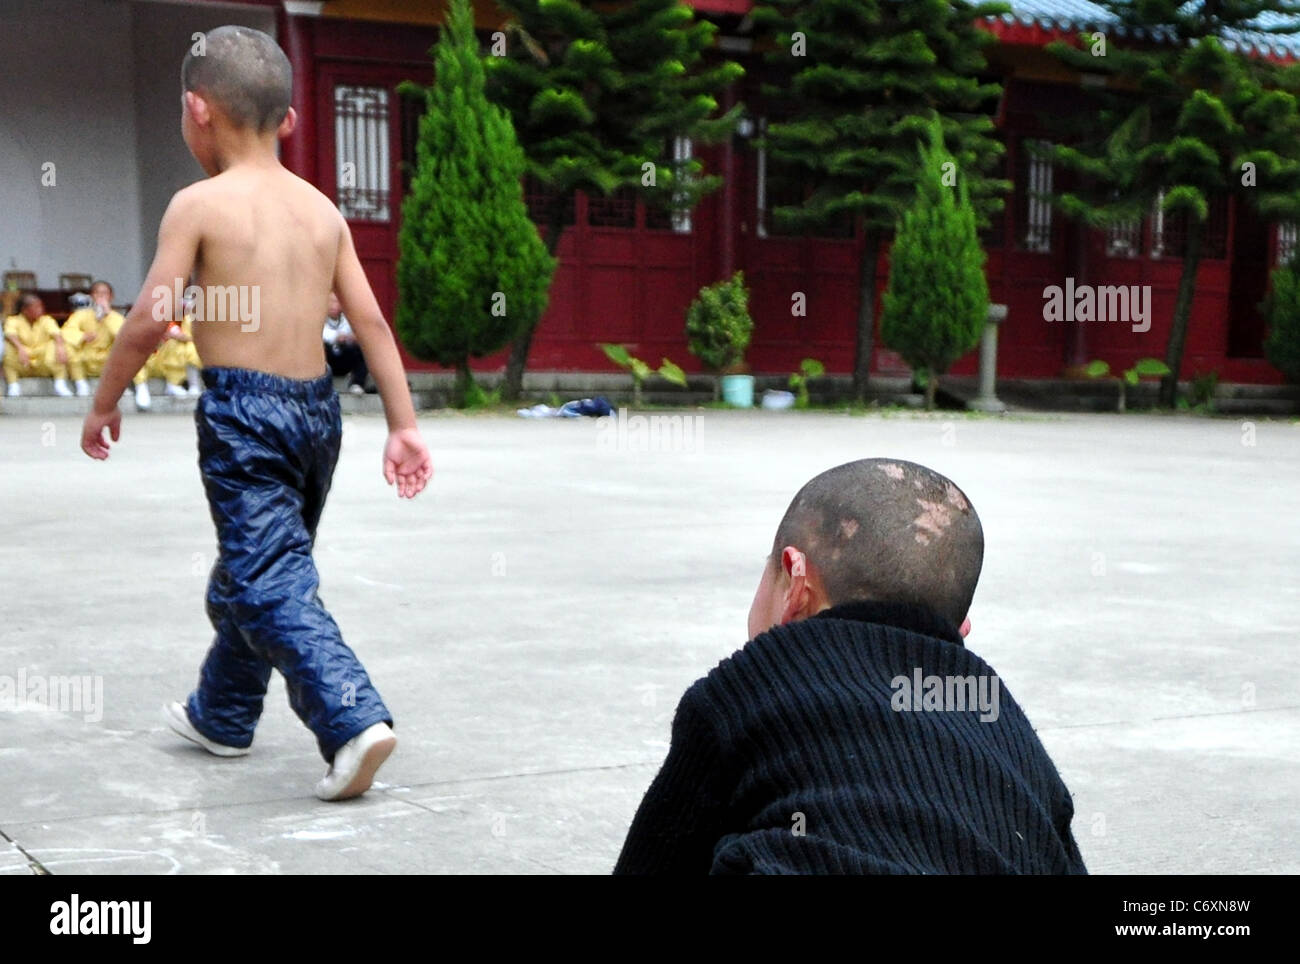 La façon Shaolin master garçons ces jeunes garçons apprennent à maîtriser l'art martiaux populaires de shaolin kung fu. L Banque D'Images